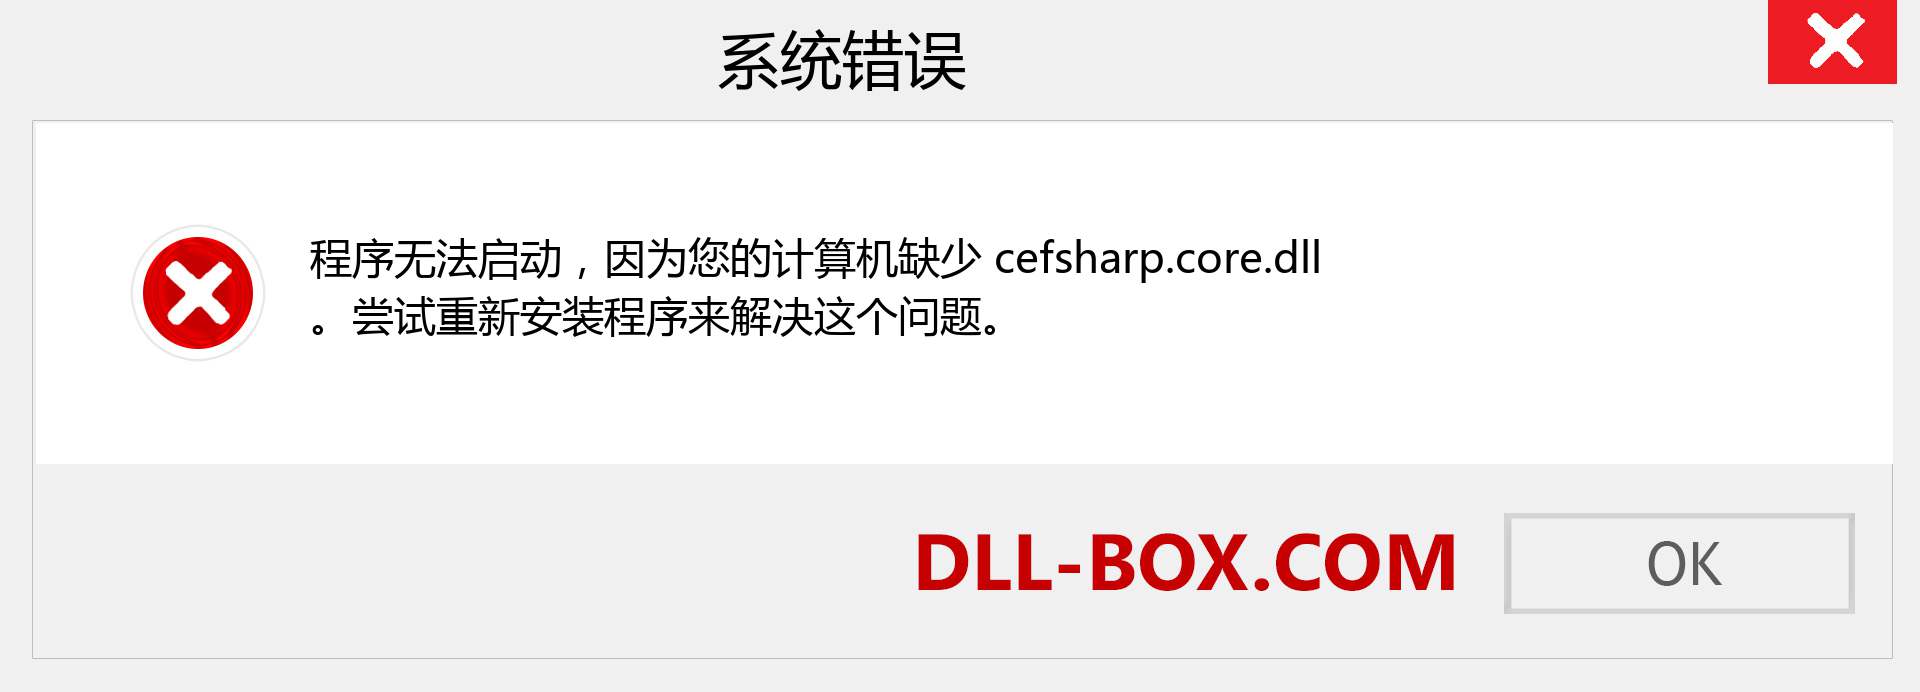 cefsharp.core.dll 文件丢失？。 适用于 Windows 7、8、10 的下载 - 修复 Windows、照片、图像上的 cefsharp.core dll 丢失错误